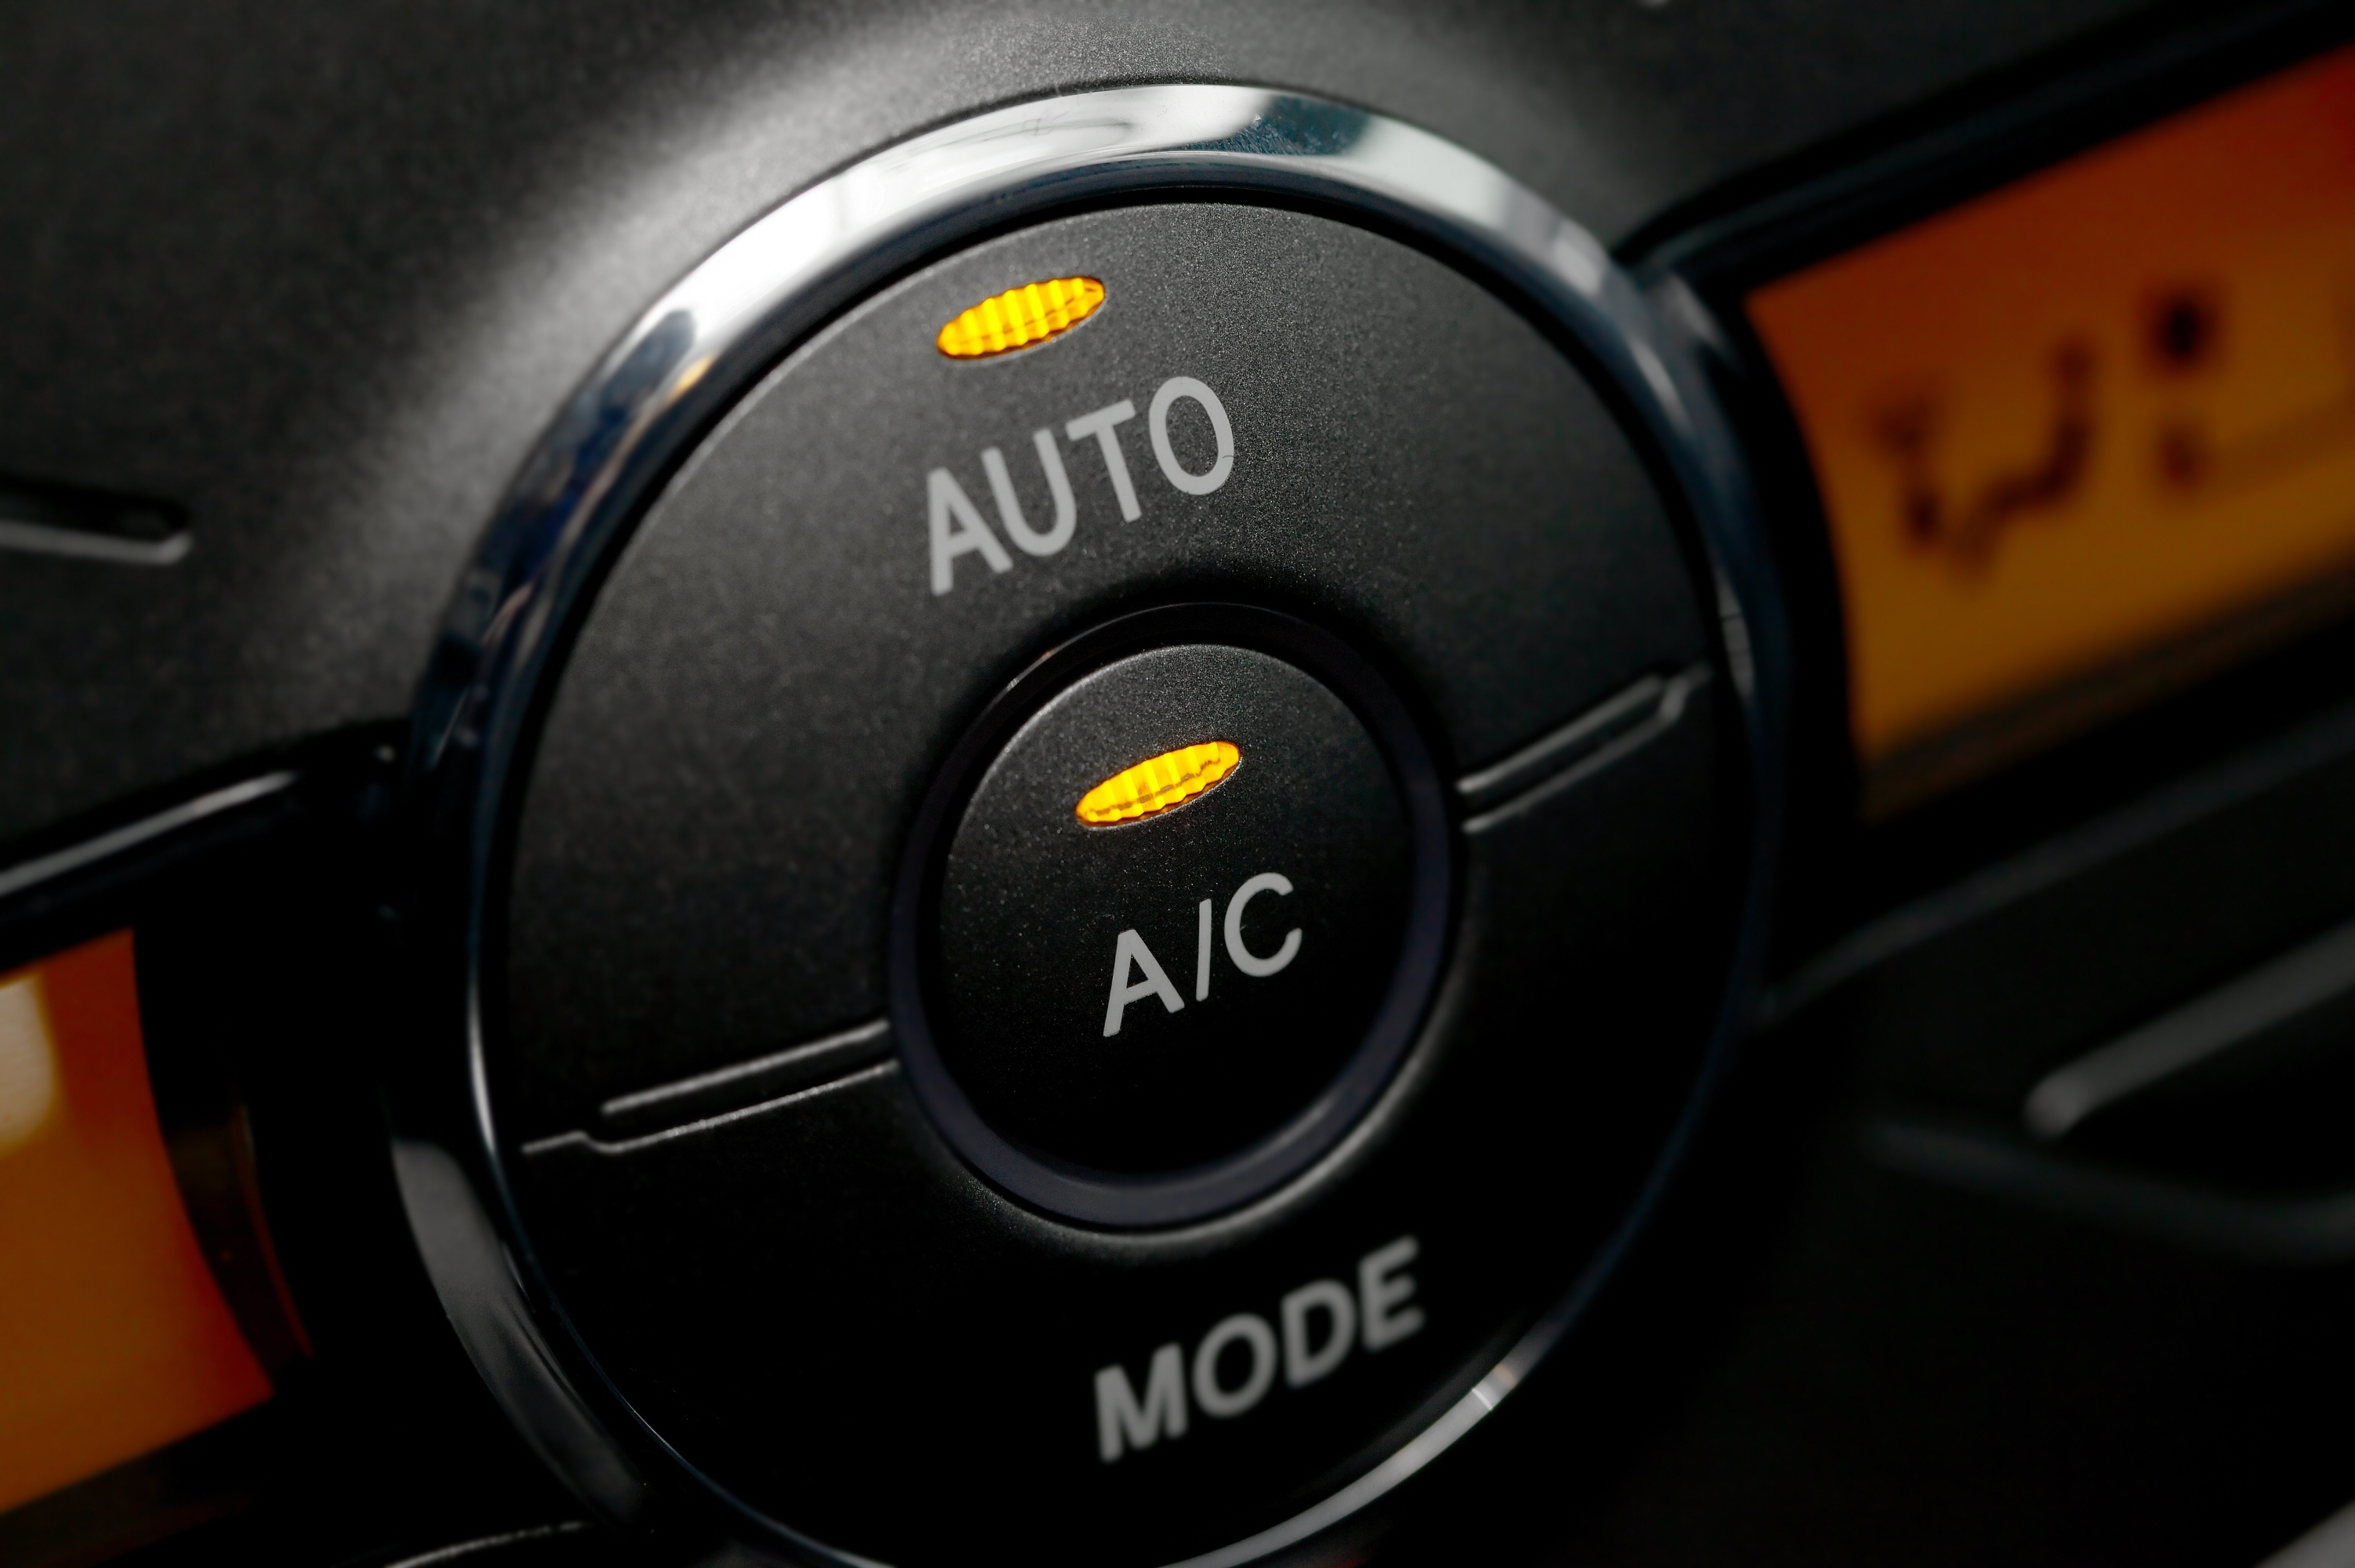 O ar condicionado do carro poderá ser fatal! Leia com atenção!